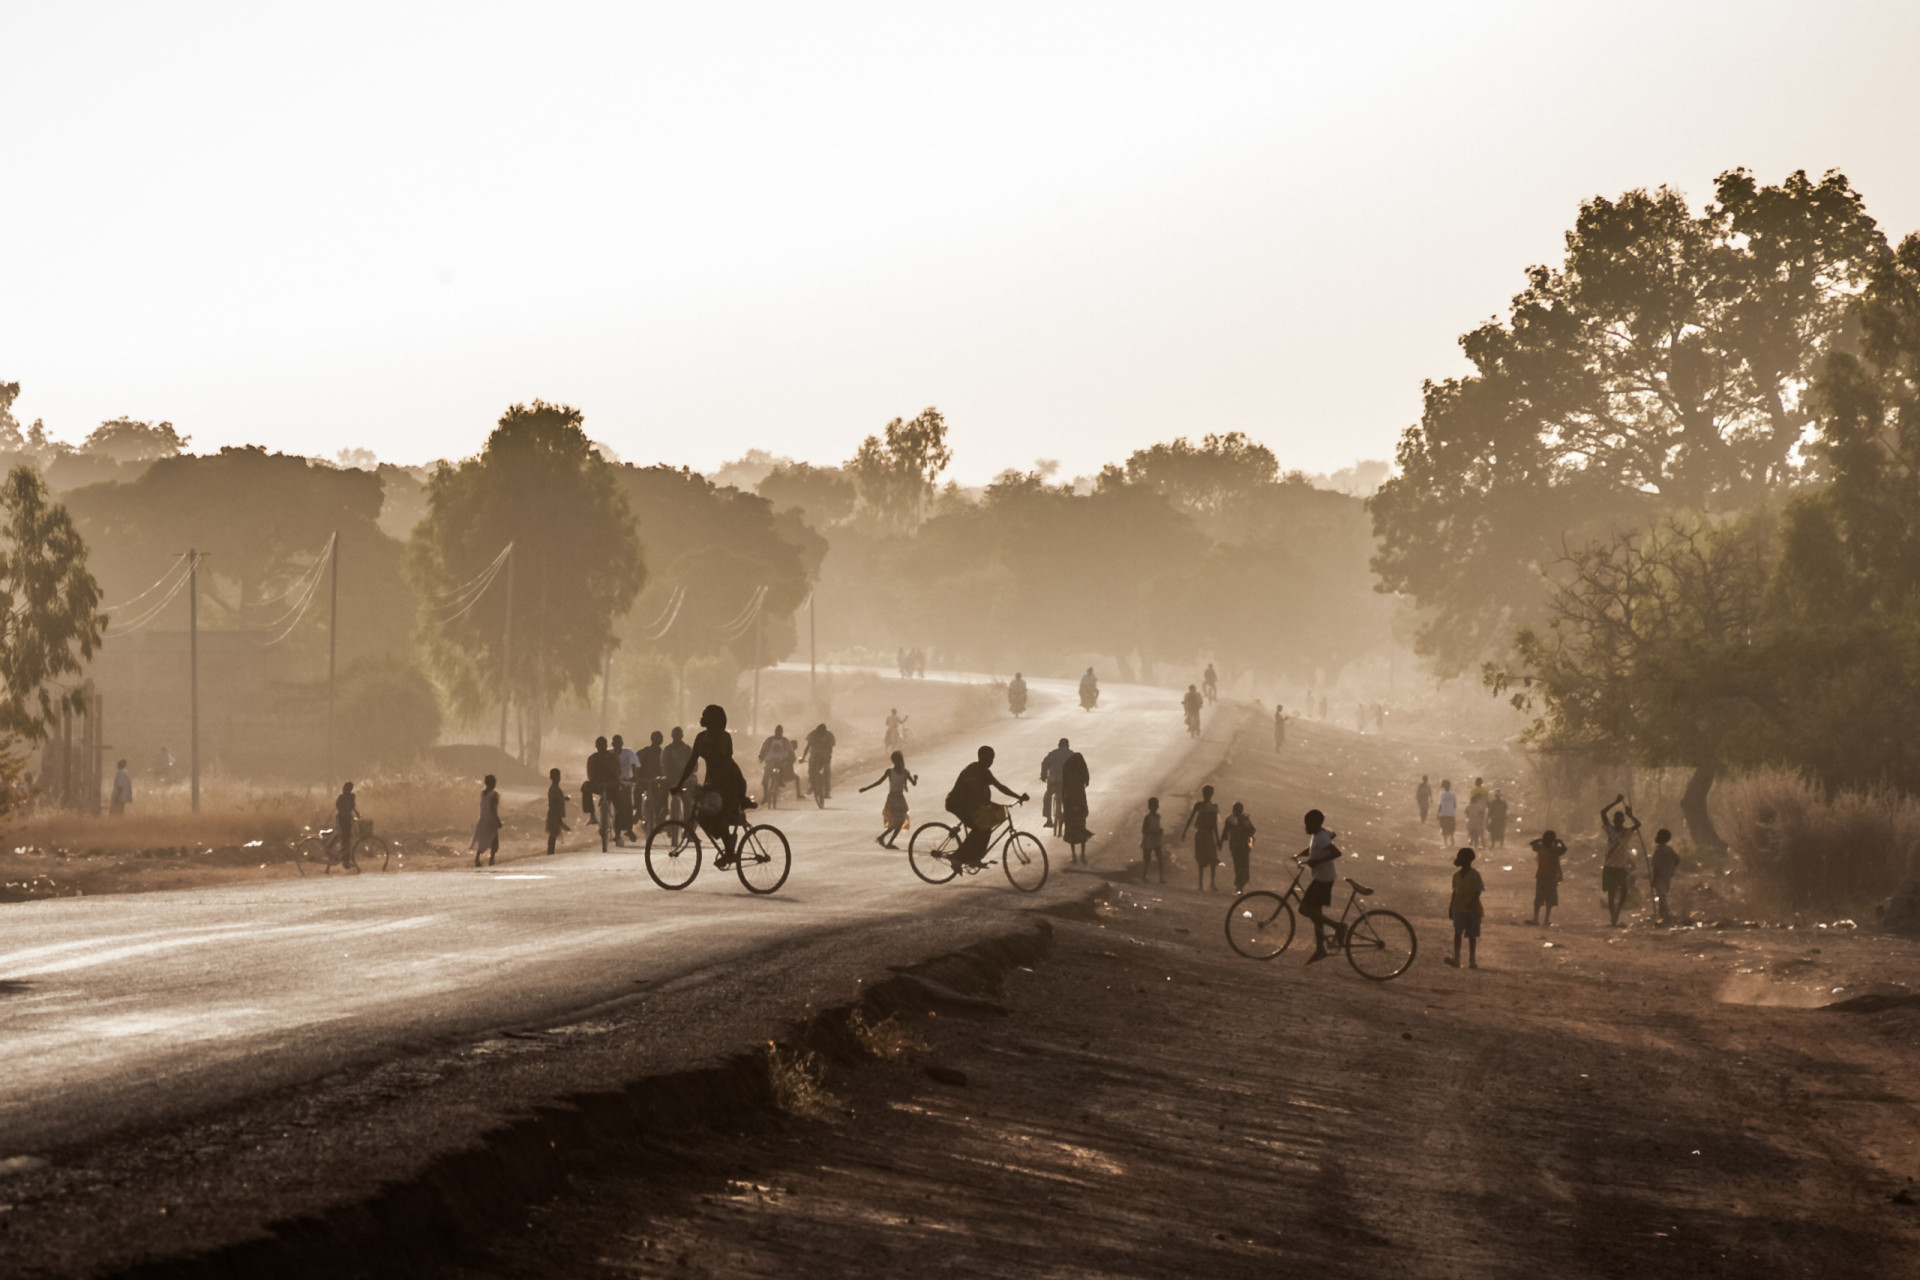 <p>Actuellement, le Burkina Faso est confronté à l'une des crises de déplacement les plus rapides au monde. Environ un quart de sa population dépend de l'aide humanitaire, ce qui a contribué à abaisser l'indice de paix global du pays à 2,868.</p><p><a href="https://www.msn.com/fr-fr/community/channel/vid-7xx8mnucu55yw63we9va2gwr7uihbxwc68fxqp25x6tg4ftibpra?cvid=94631541bc0f4f89bfd59158d696ad7e">Suivez-nous et accédez tous les jours à du contenu exclusif</a></p>